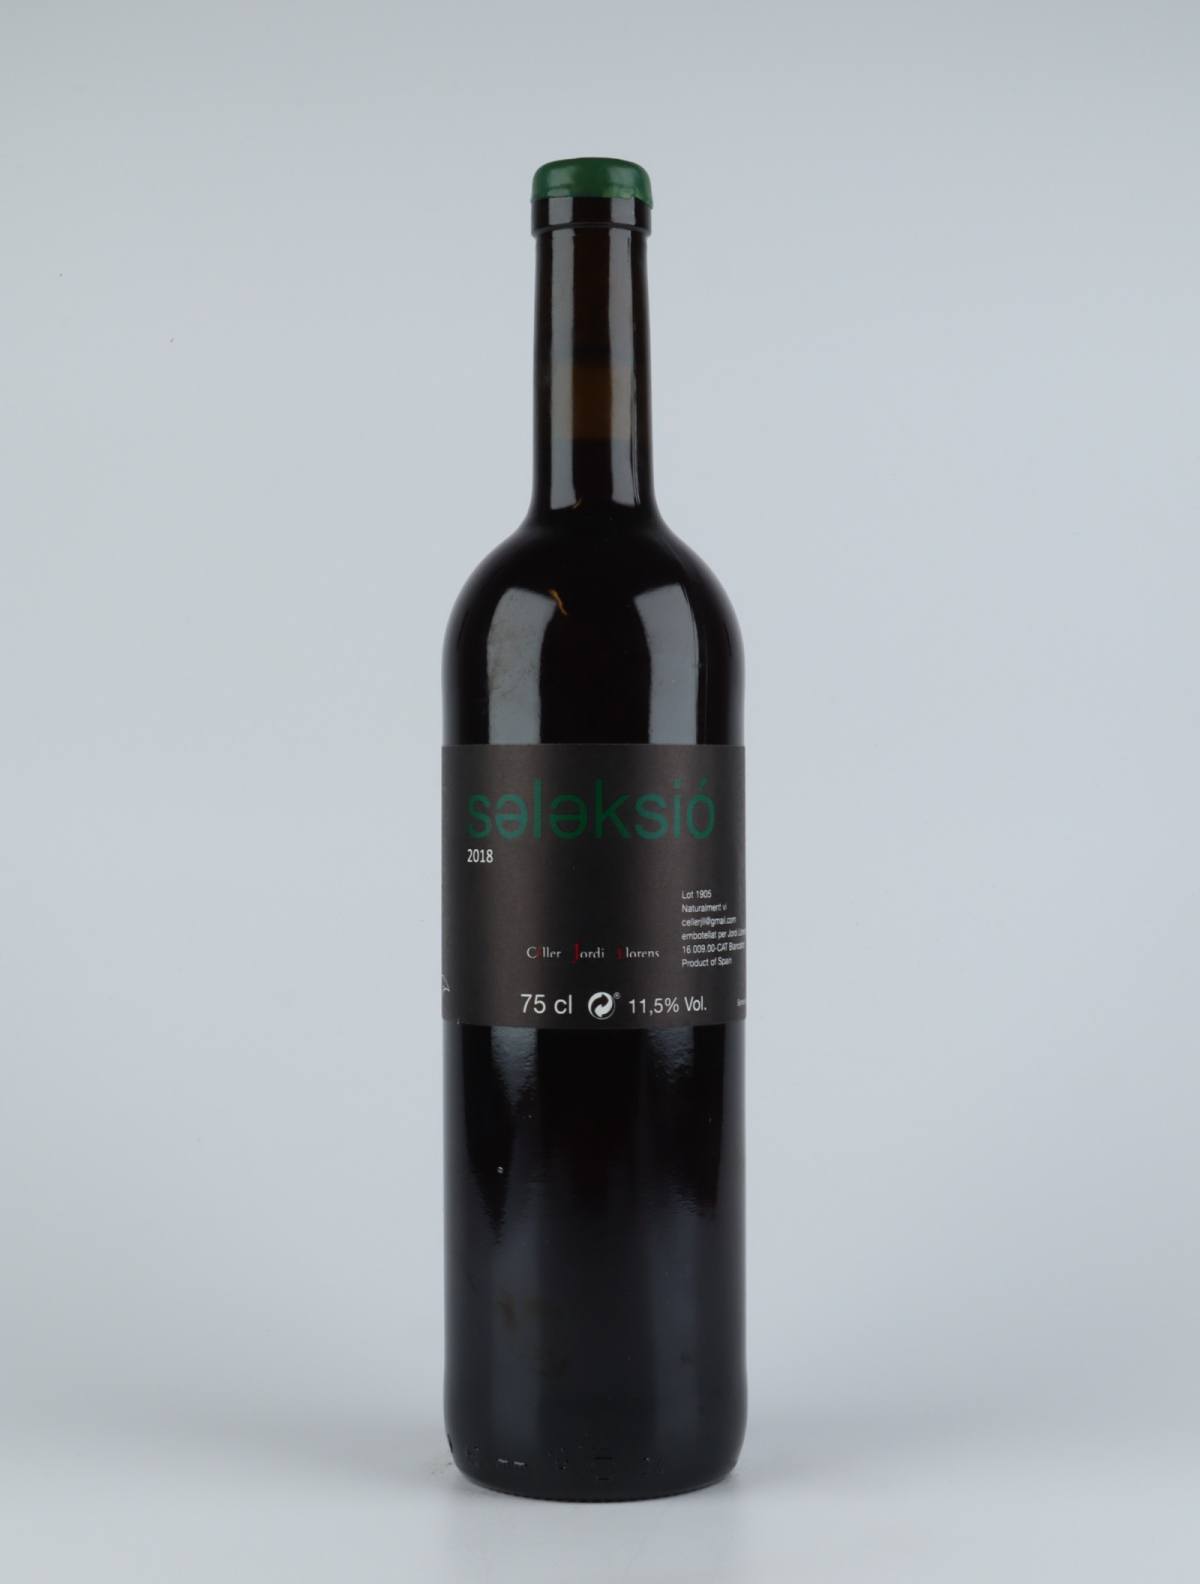 En flaske 2018 Salaksio Rødvin fra Jordi Llorens, Catalonien i Spanien